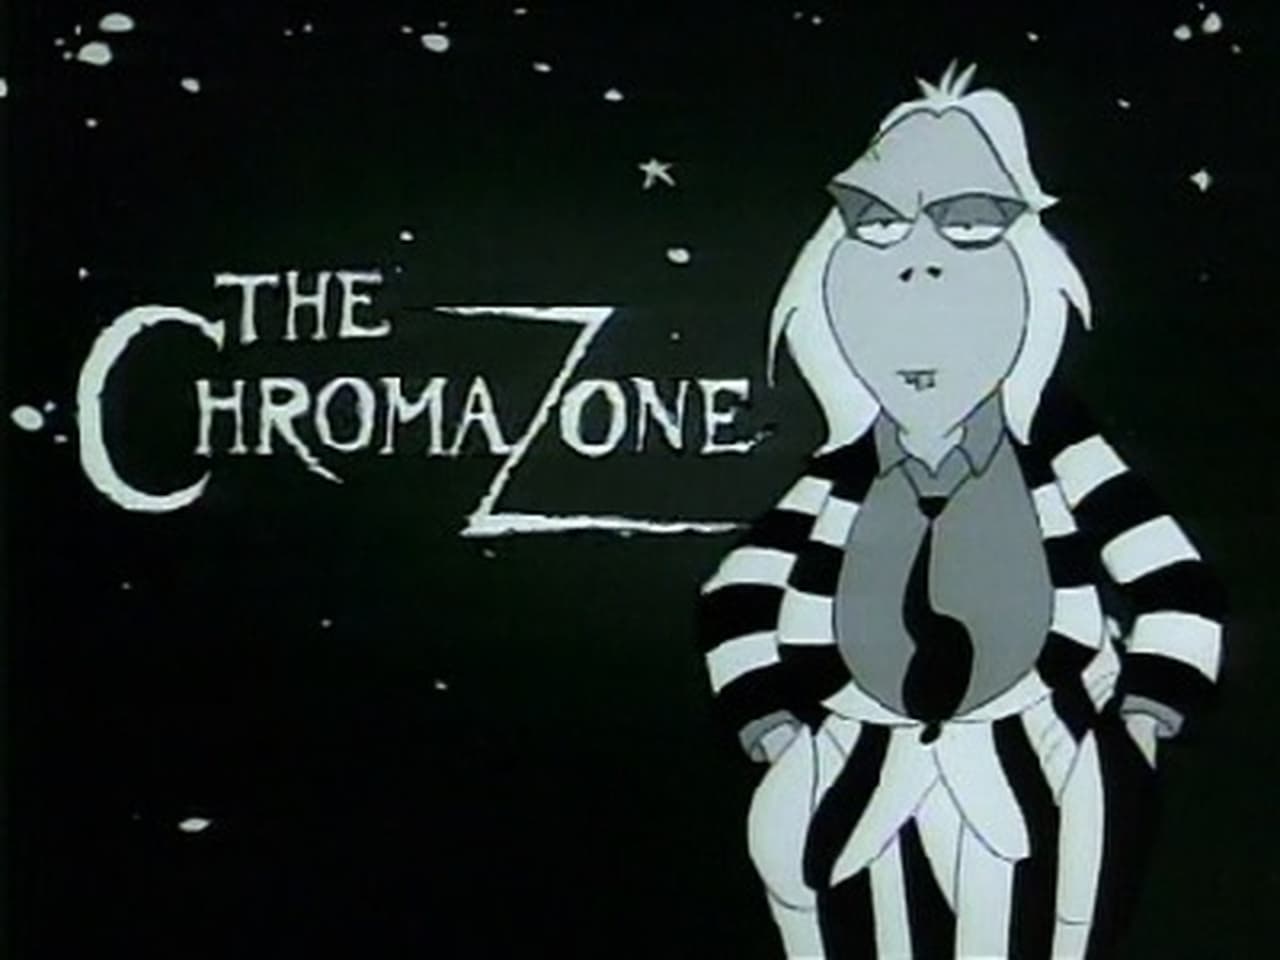 The Chromazone